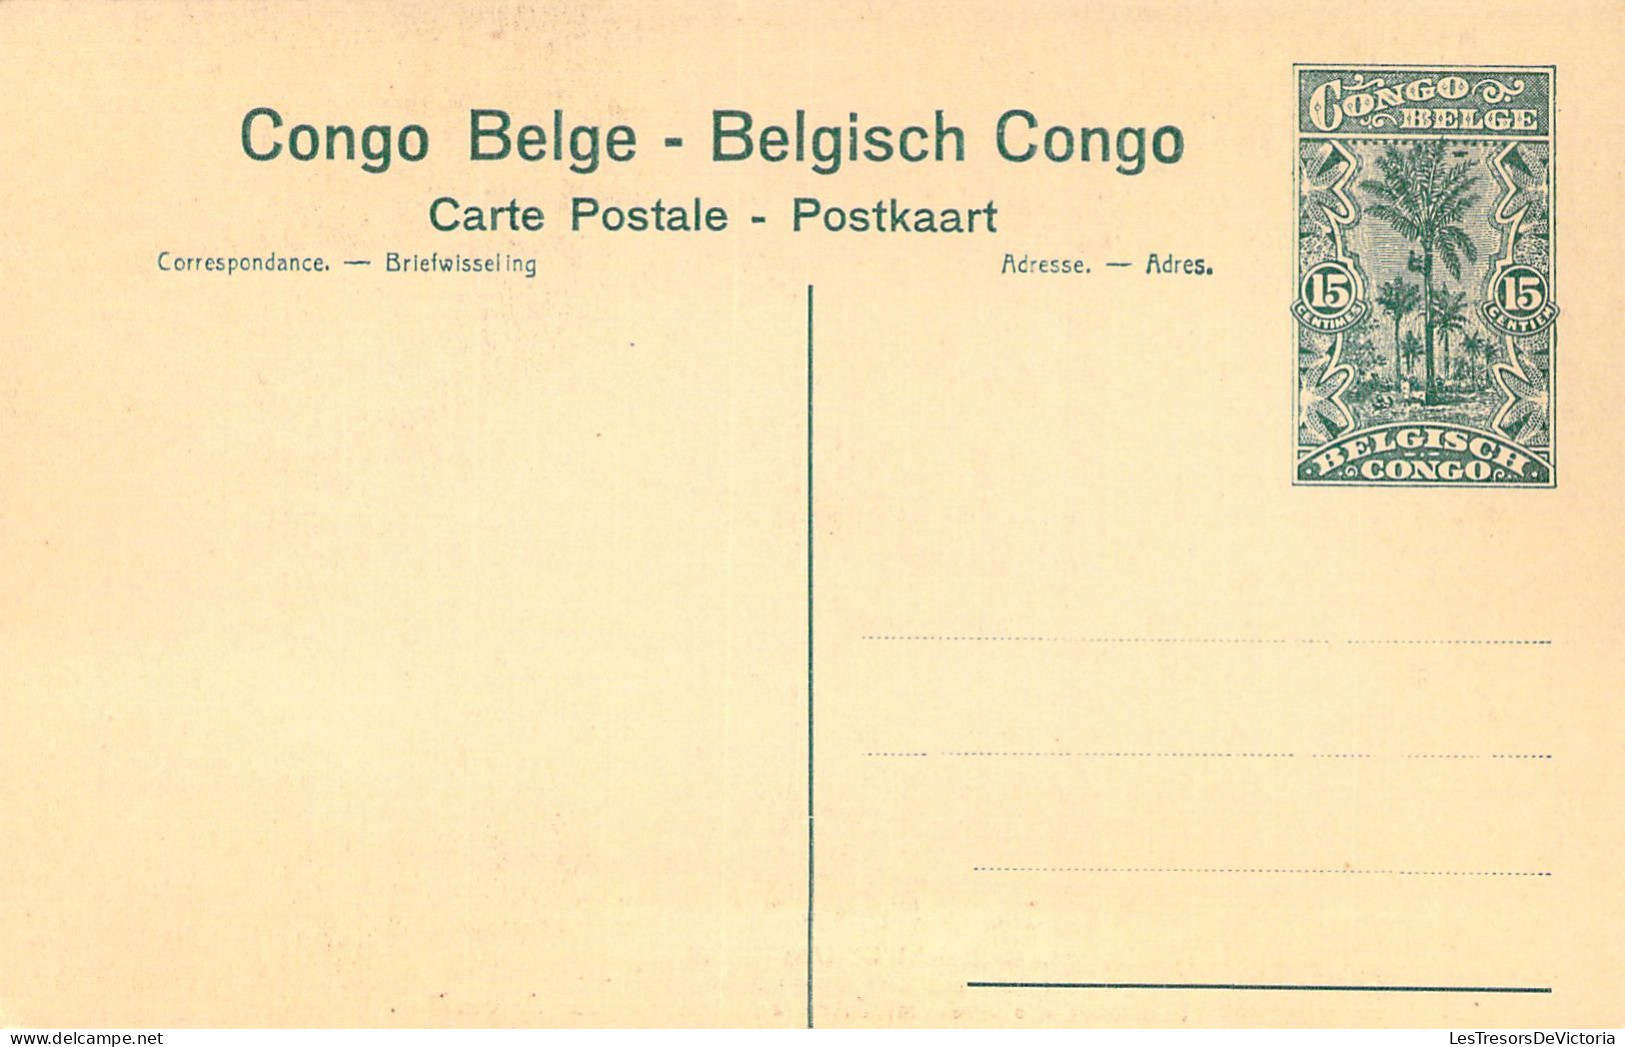 CONGO BELGE - BAUDOUINVILLE - Indigènes Apportant Des Vivres à La Mission - Carte Postale Ancienne - Belgian Congo